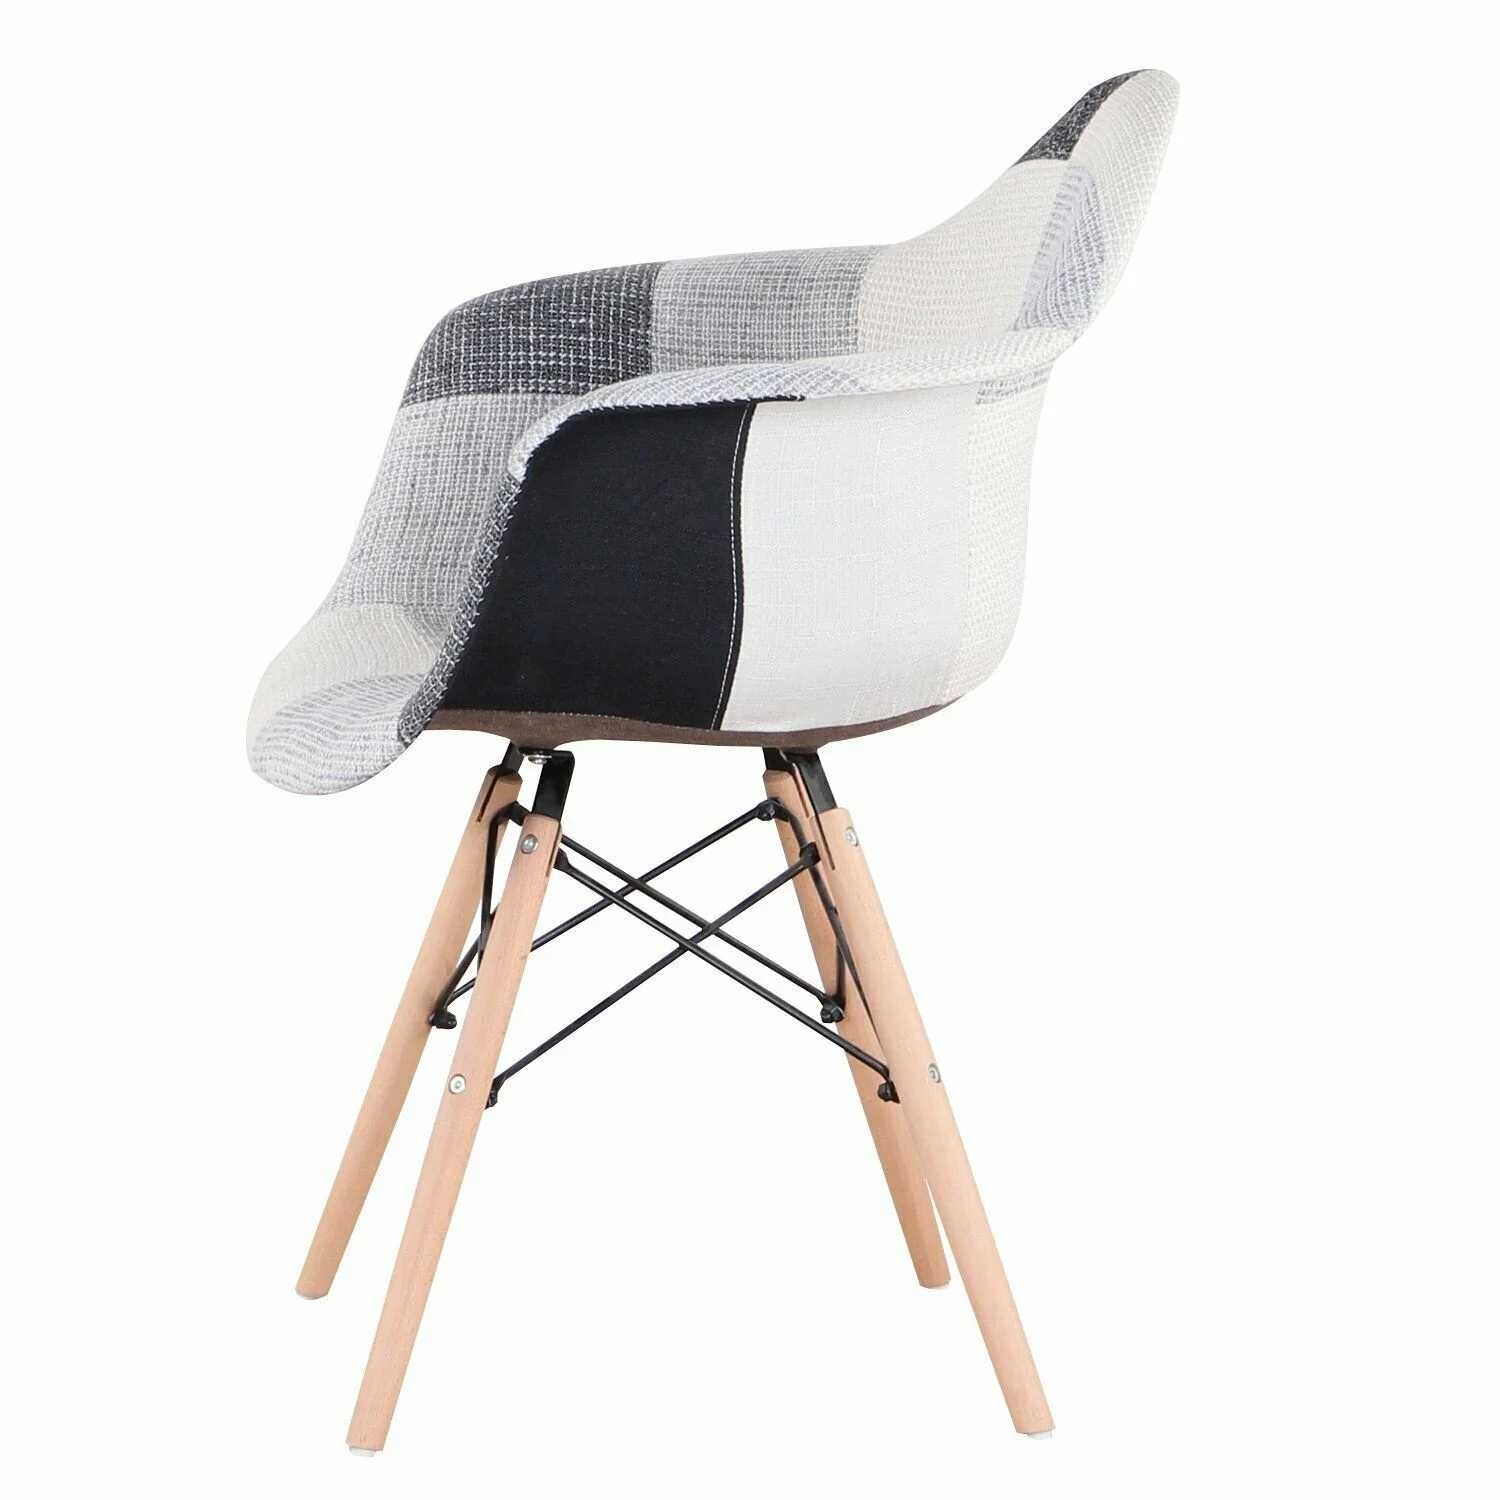 Висококачествени трапезни столове тип кресло пачуърк МОДЕЛ 303